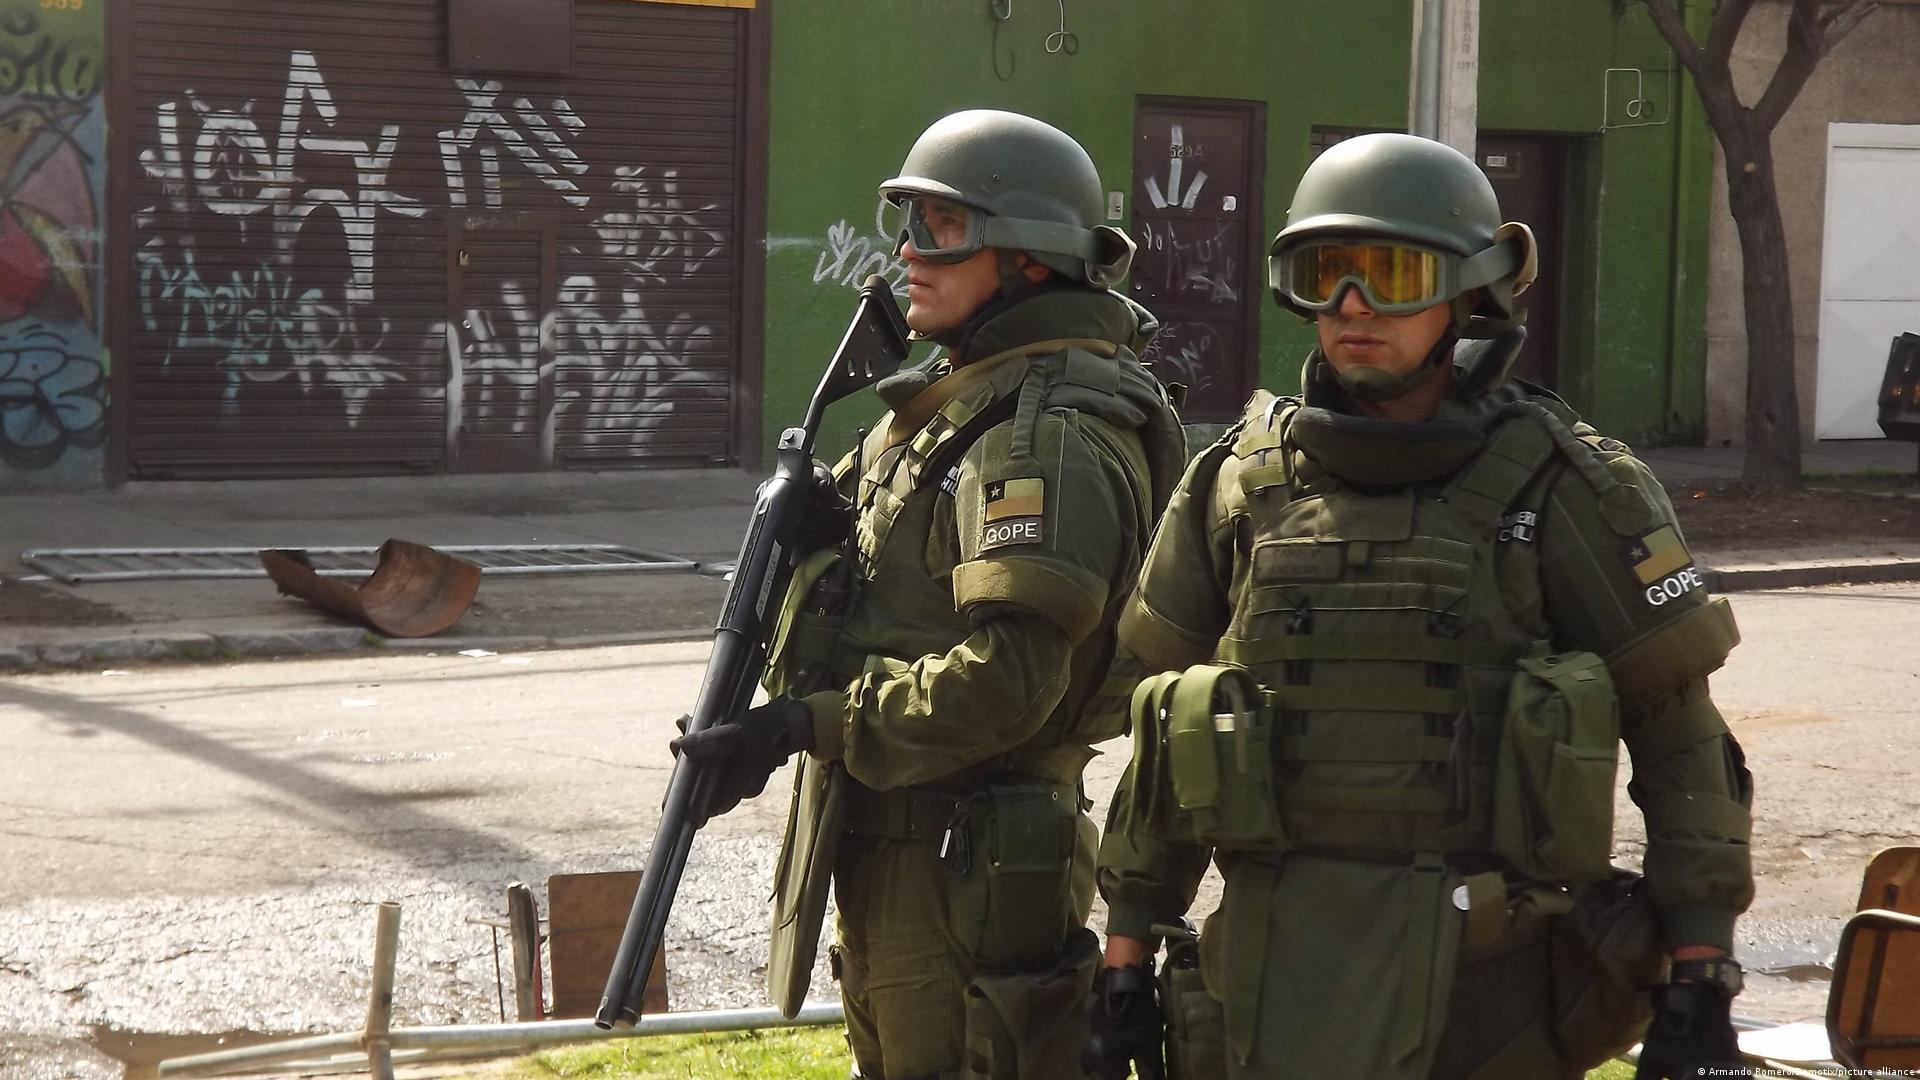 Megabandas venezolanas copian sistema de jerarquía militar para delinquir -  Observatorio Venezolano de Violencia